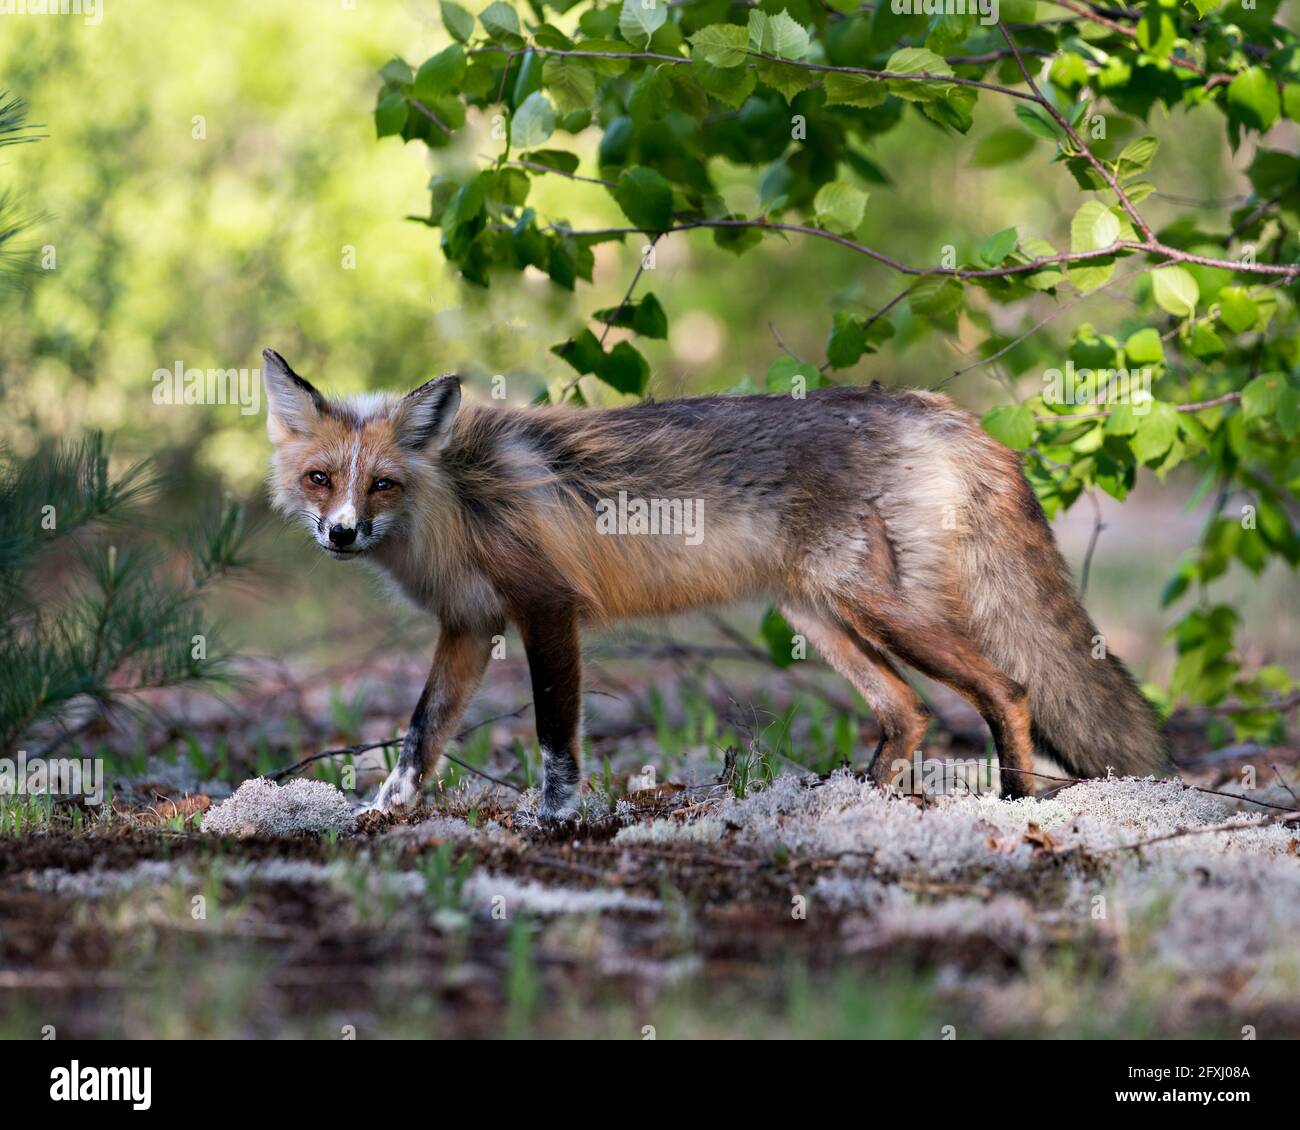 Vista laterale del profilo della volpe rossa in primavera guardando la telecamera con uno sfondo di albero e un terreno di muschio bianco nel suo habitat. Immagine FOX. Foto. Foto Stock